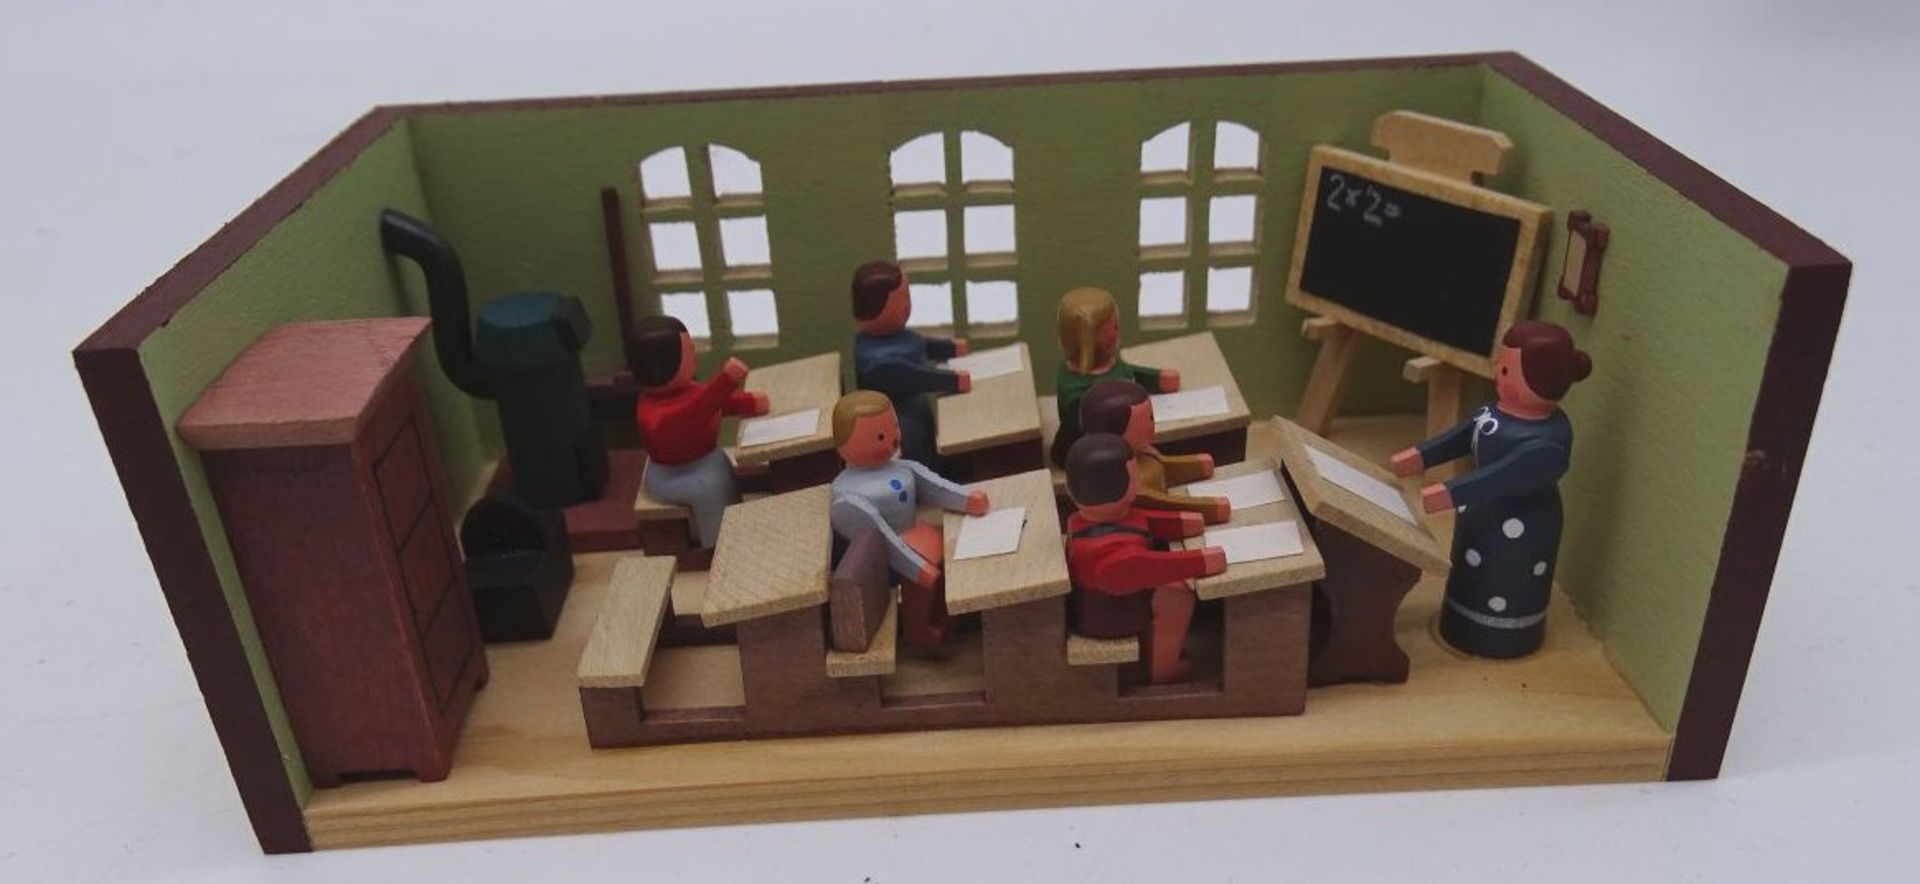 Seiffener Miniaturen-Klassenzimmer, von G. Flath, H-4 cm, 11x6 cm